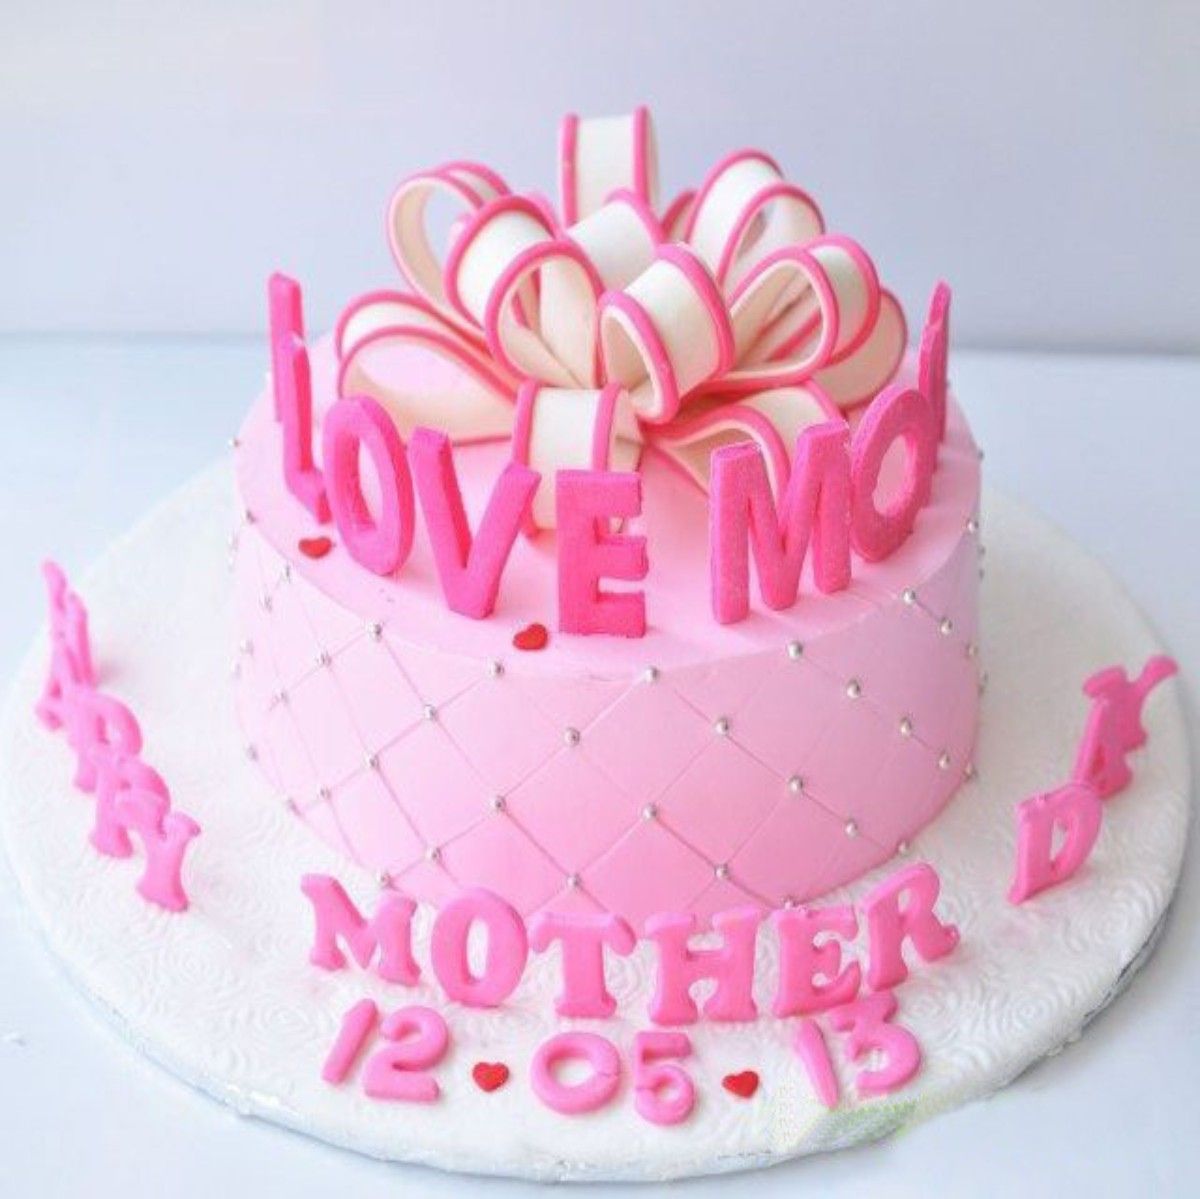 Happy Birthday Mom Fondant Cake